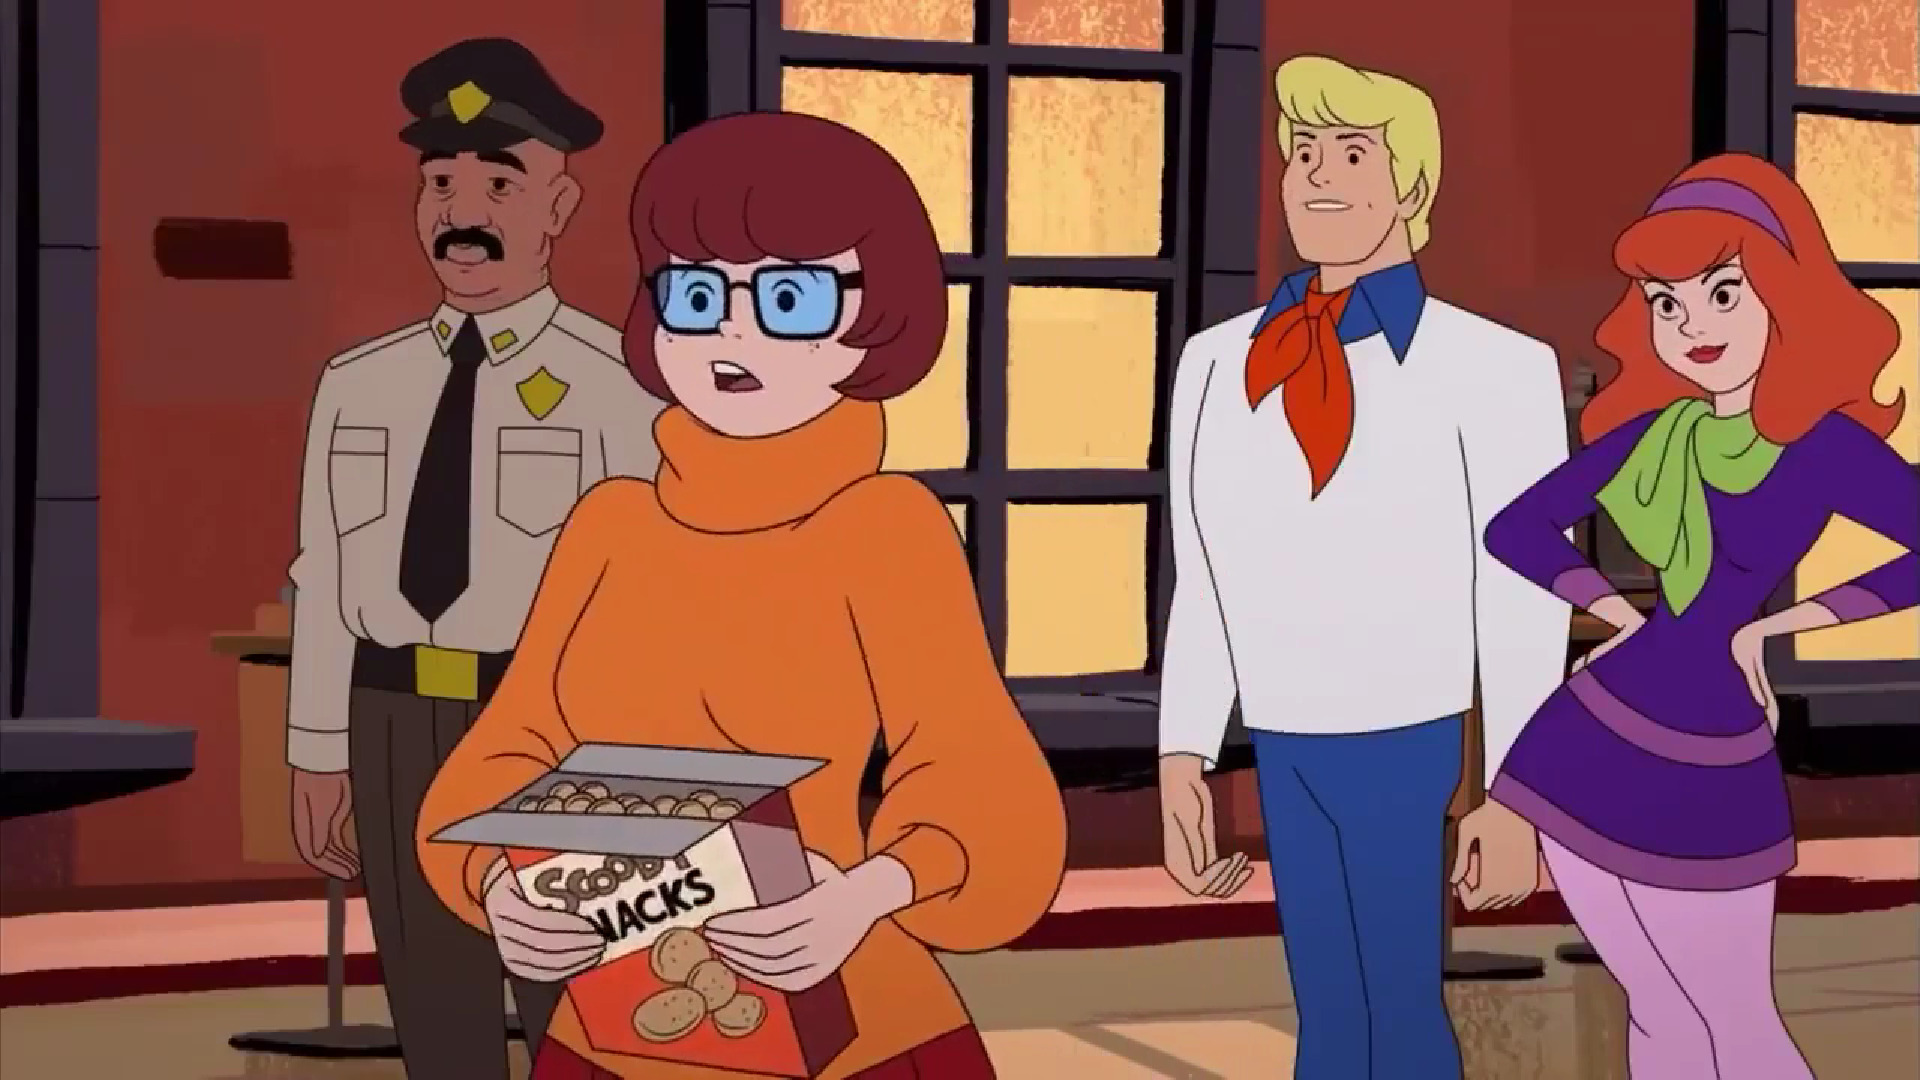 Vilma Dinkley Personaje De Scooby Doo Se Enamora De Coco Diablo Una Diseñadora De Moda